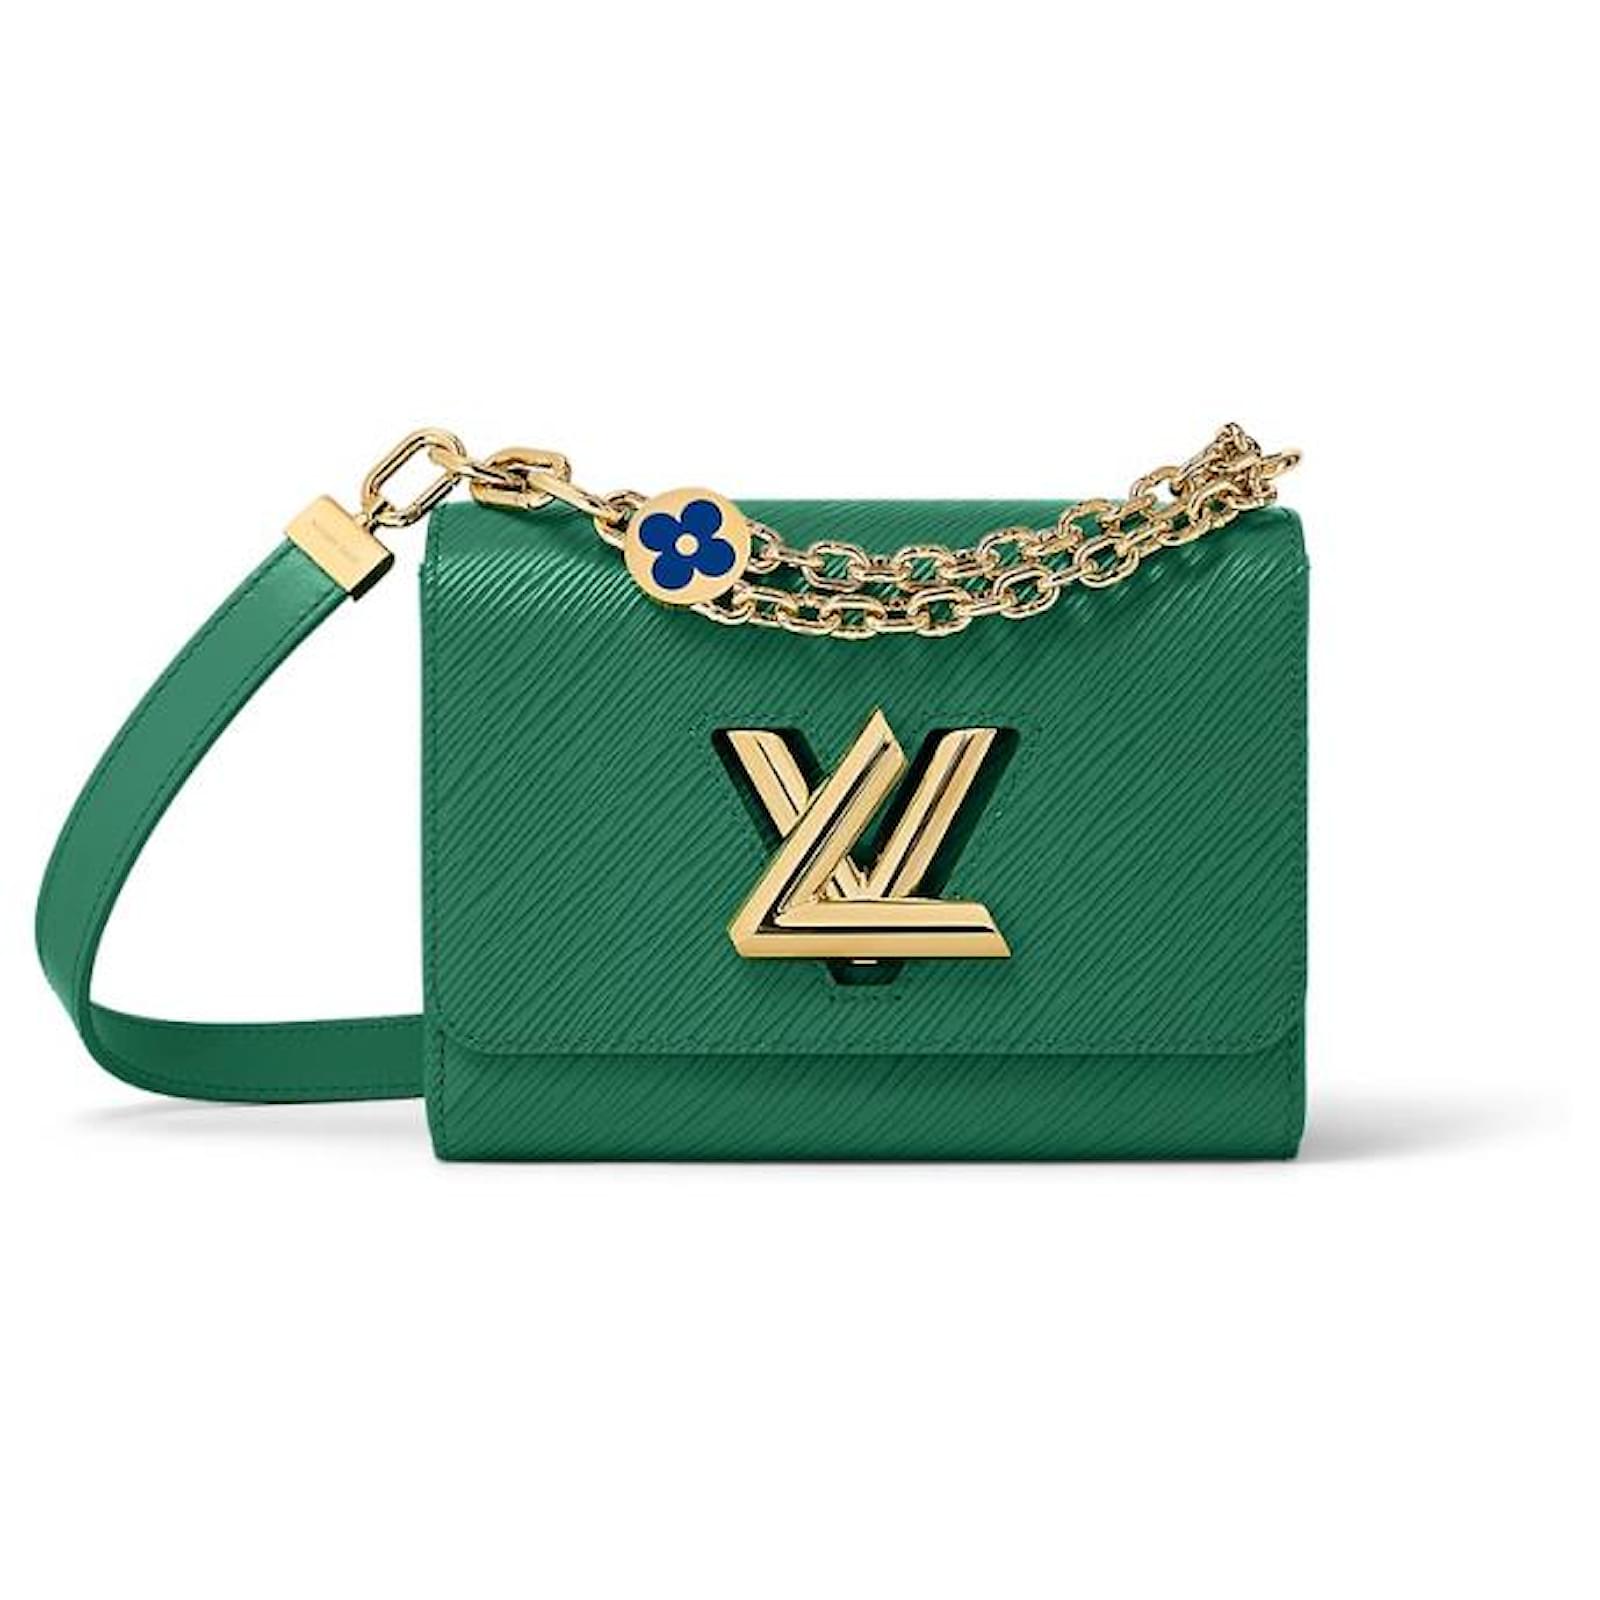 Baúl de Louis Vuitton. Precio: 37.500 euros. + louisvuitton.com, Fueradeserie/moda-y-caprichos